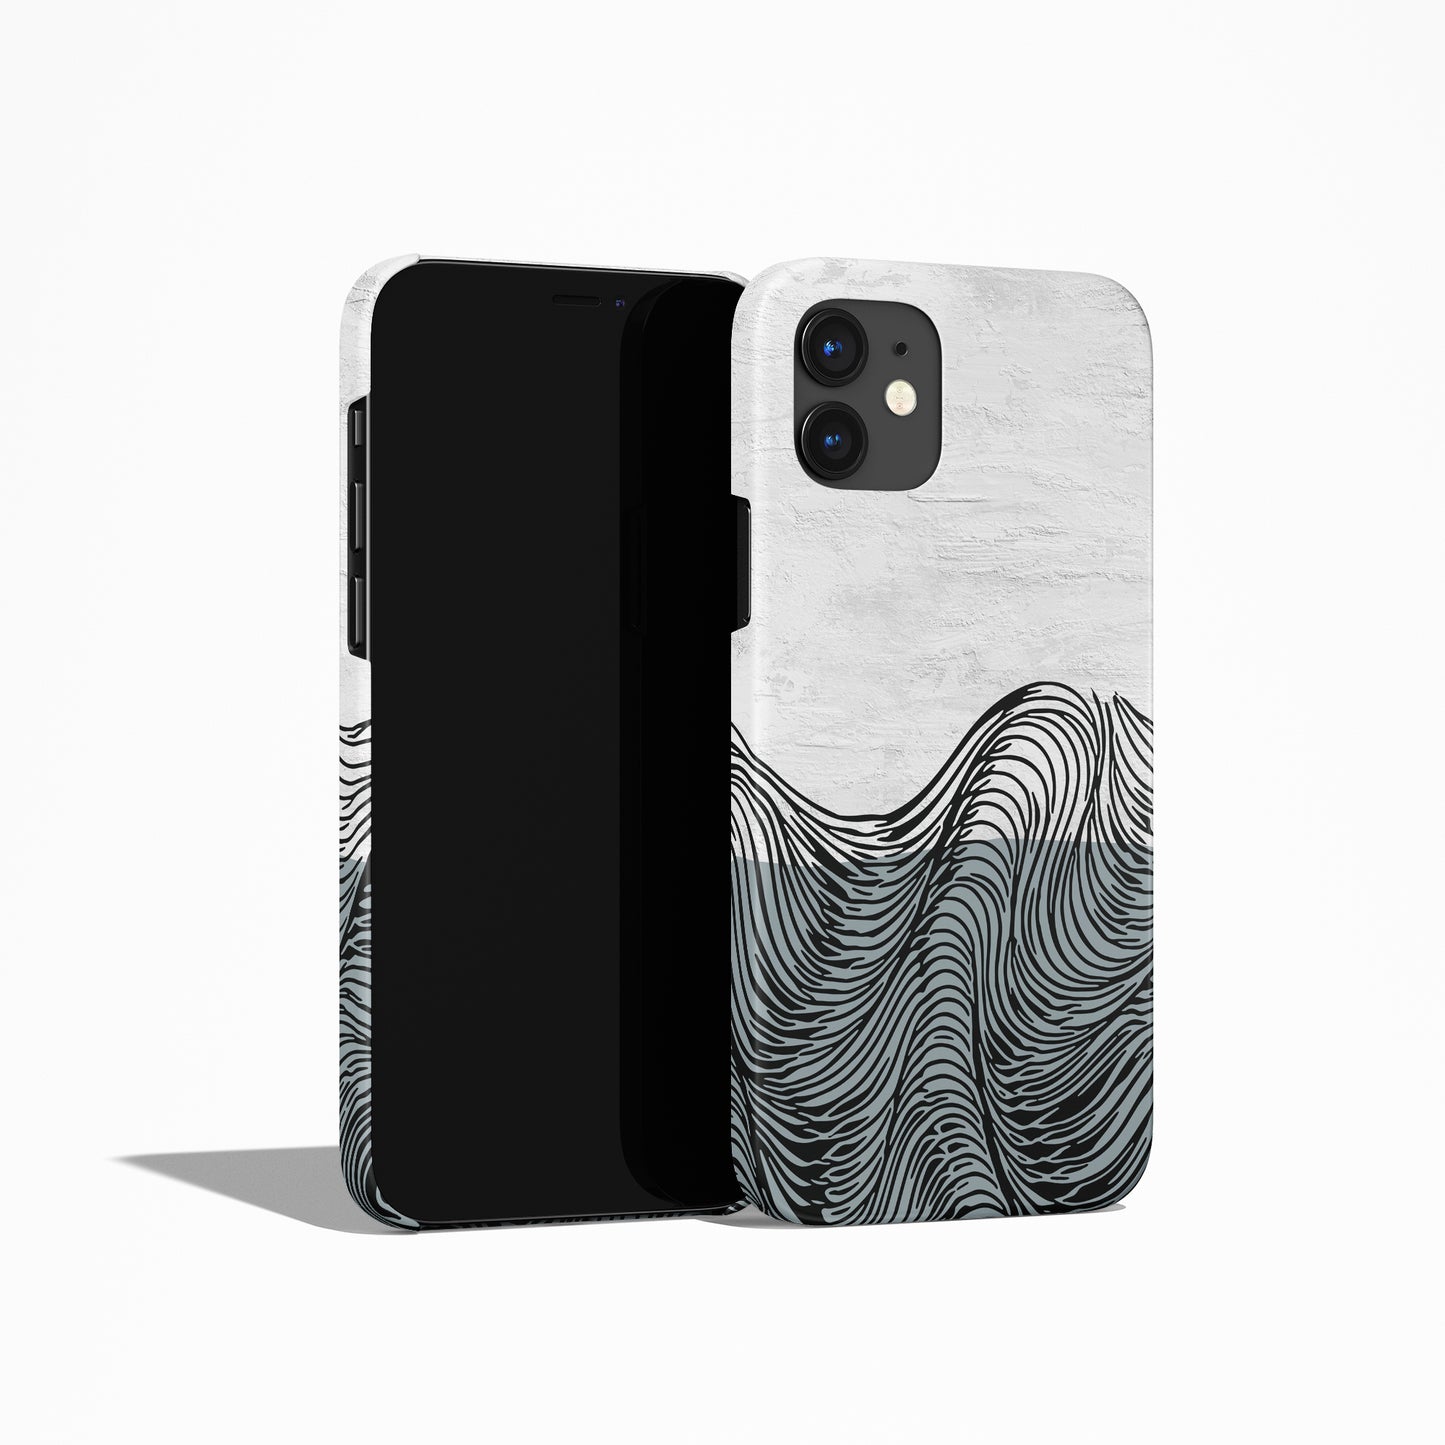 Scandinavian Design Grey iPhone Case